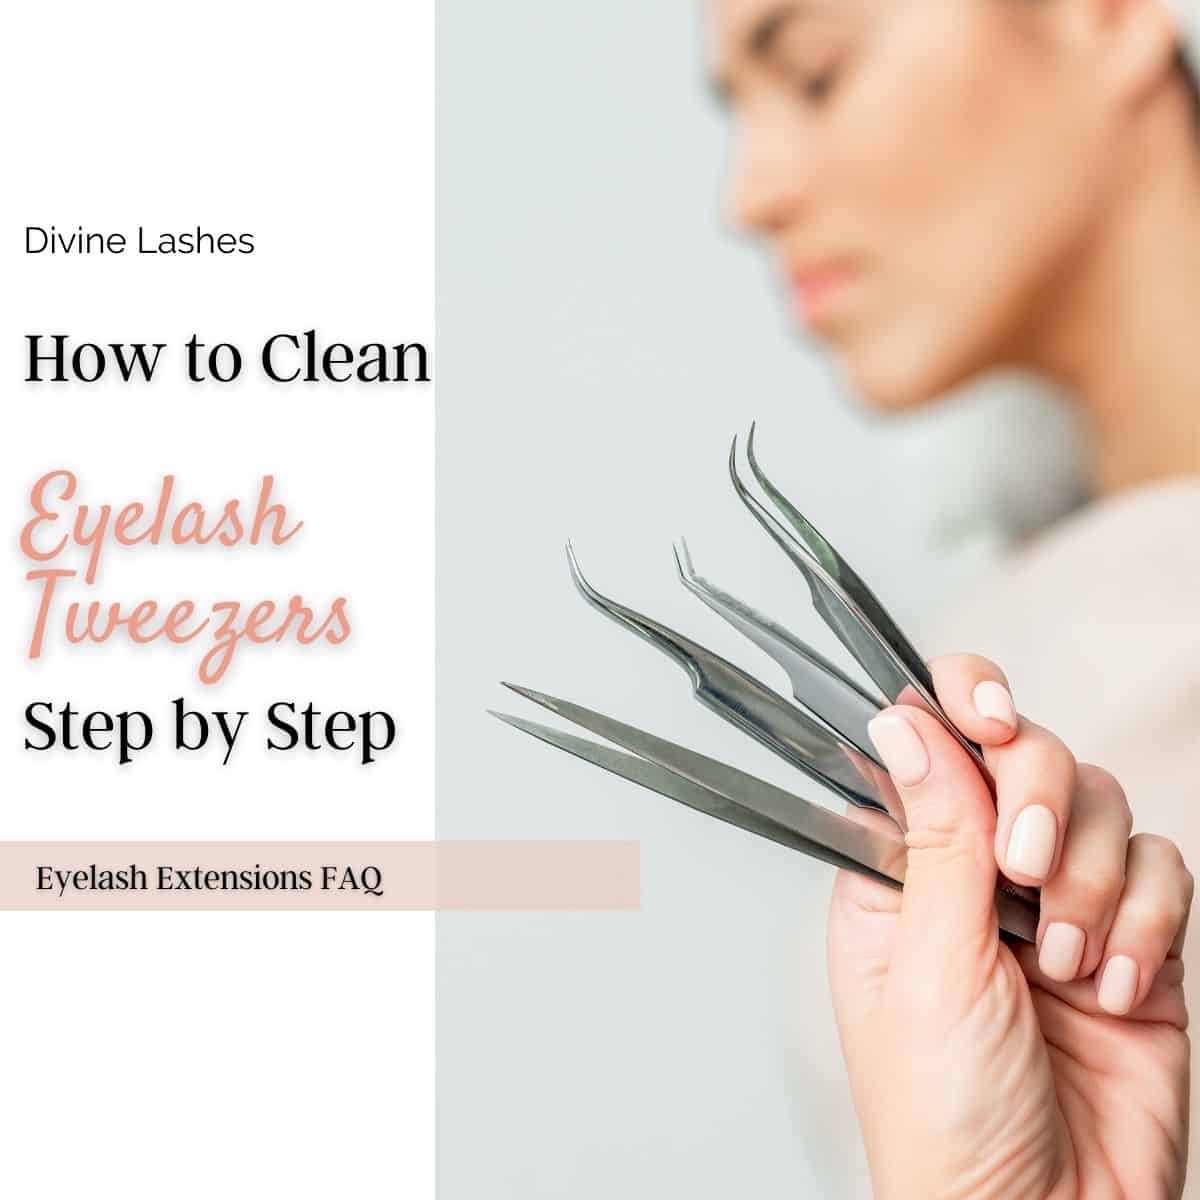 How to Clean Lash Tweezers?